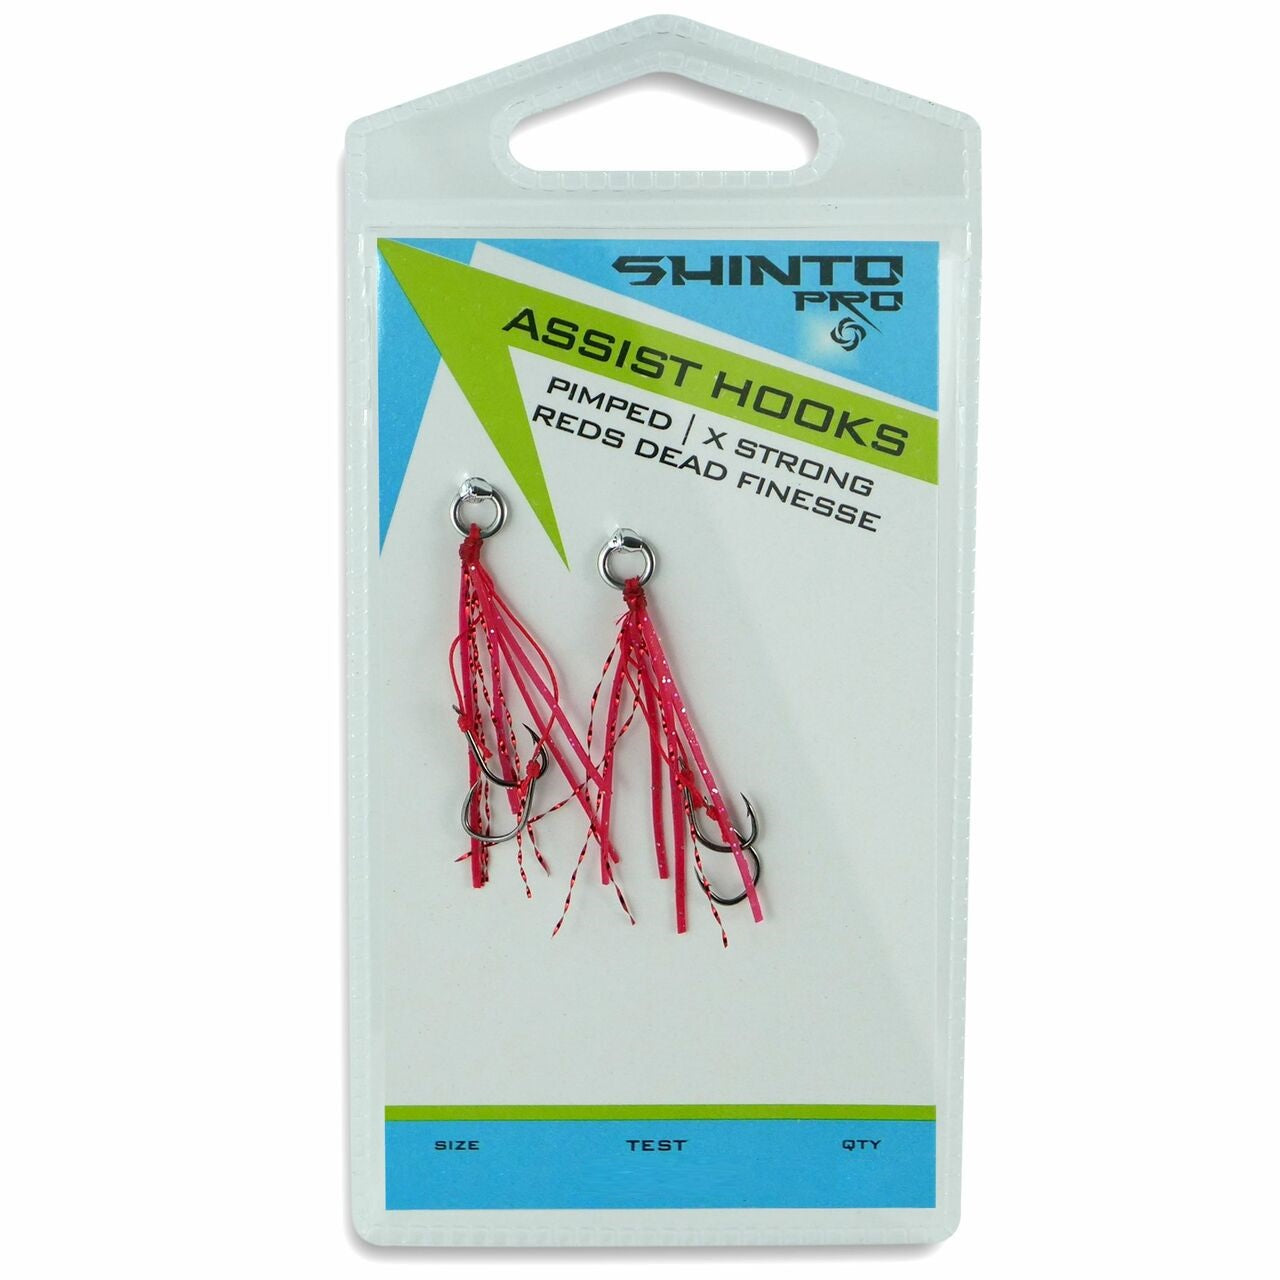 Shinto Pro Micro Assist Hooks